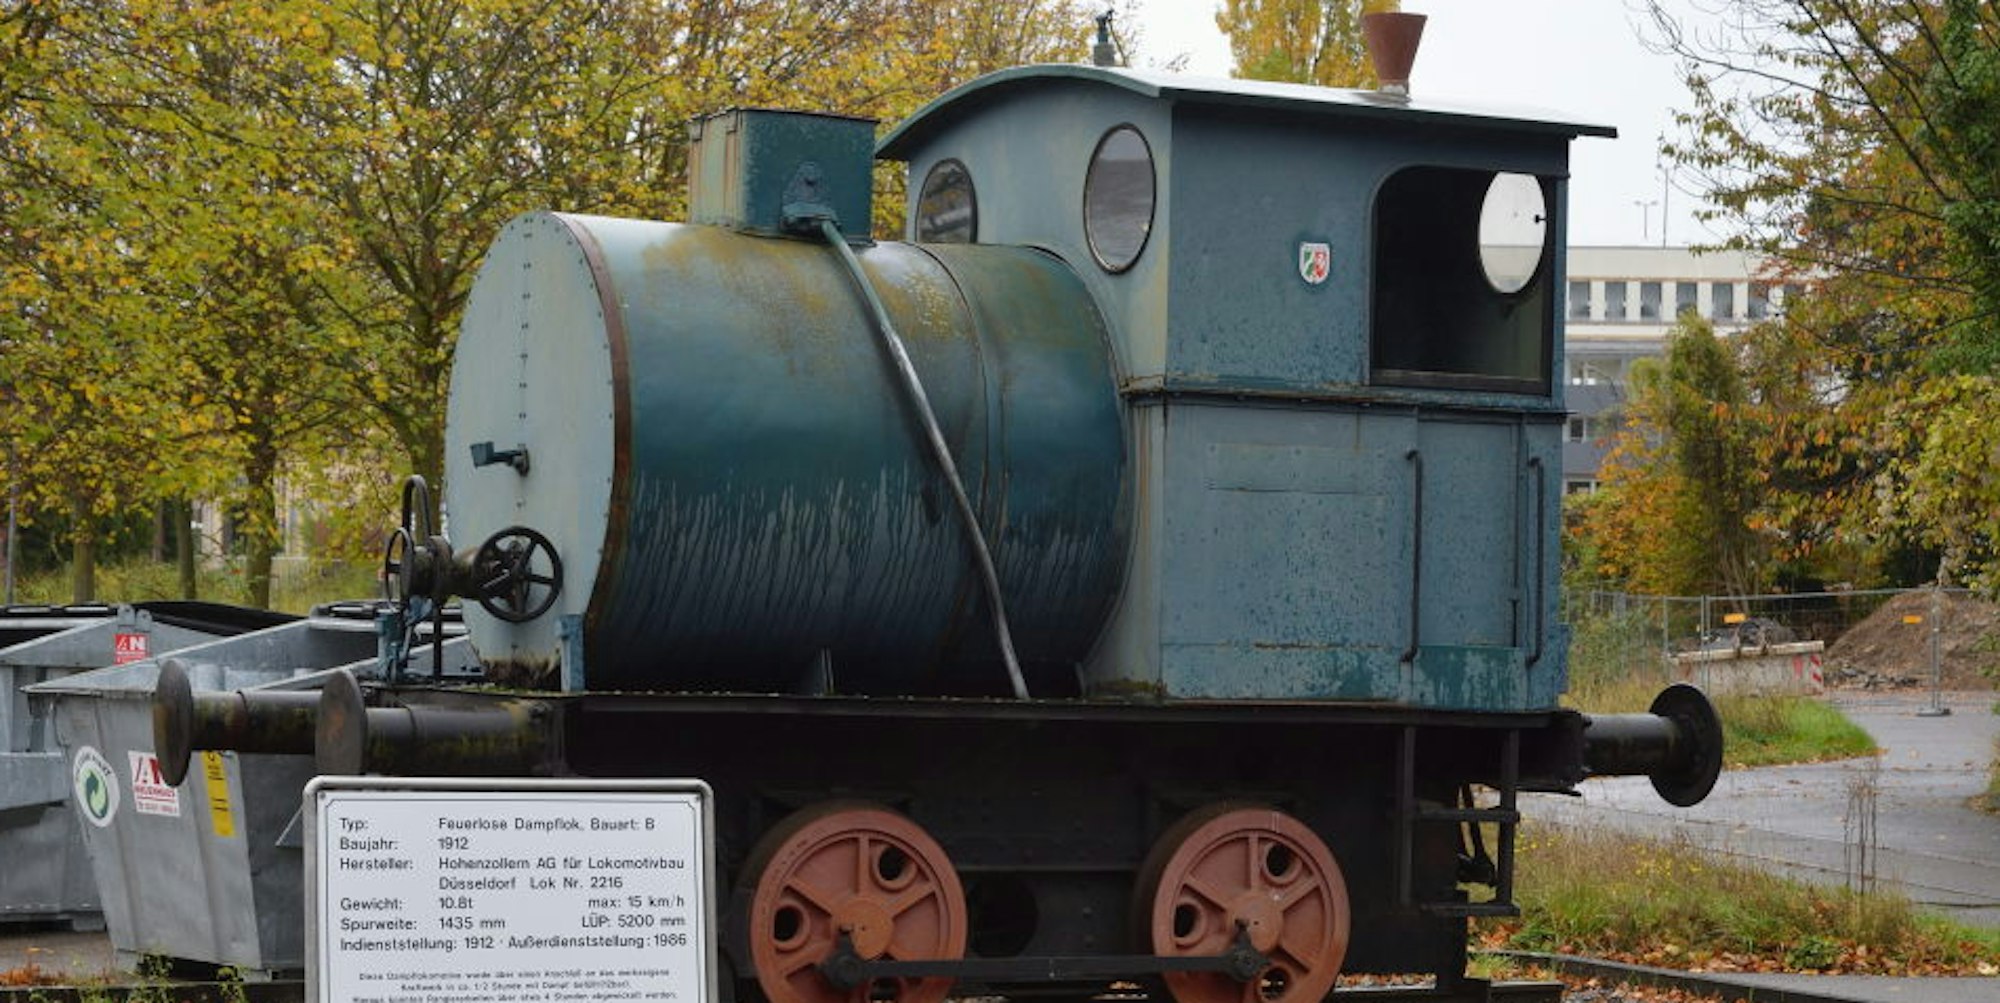 Diese Dampflokomotive Baujahr 1912 wurde 1982 stillgelegt - heute ein Denkmal auf dem städtischen Zanders-Gelände.